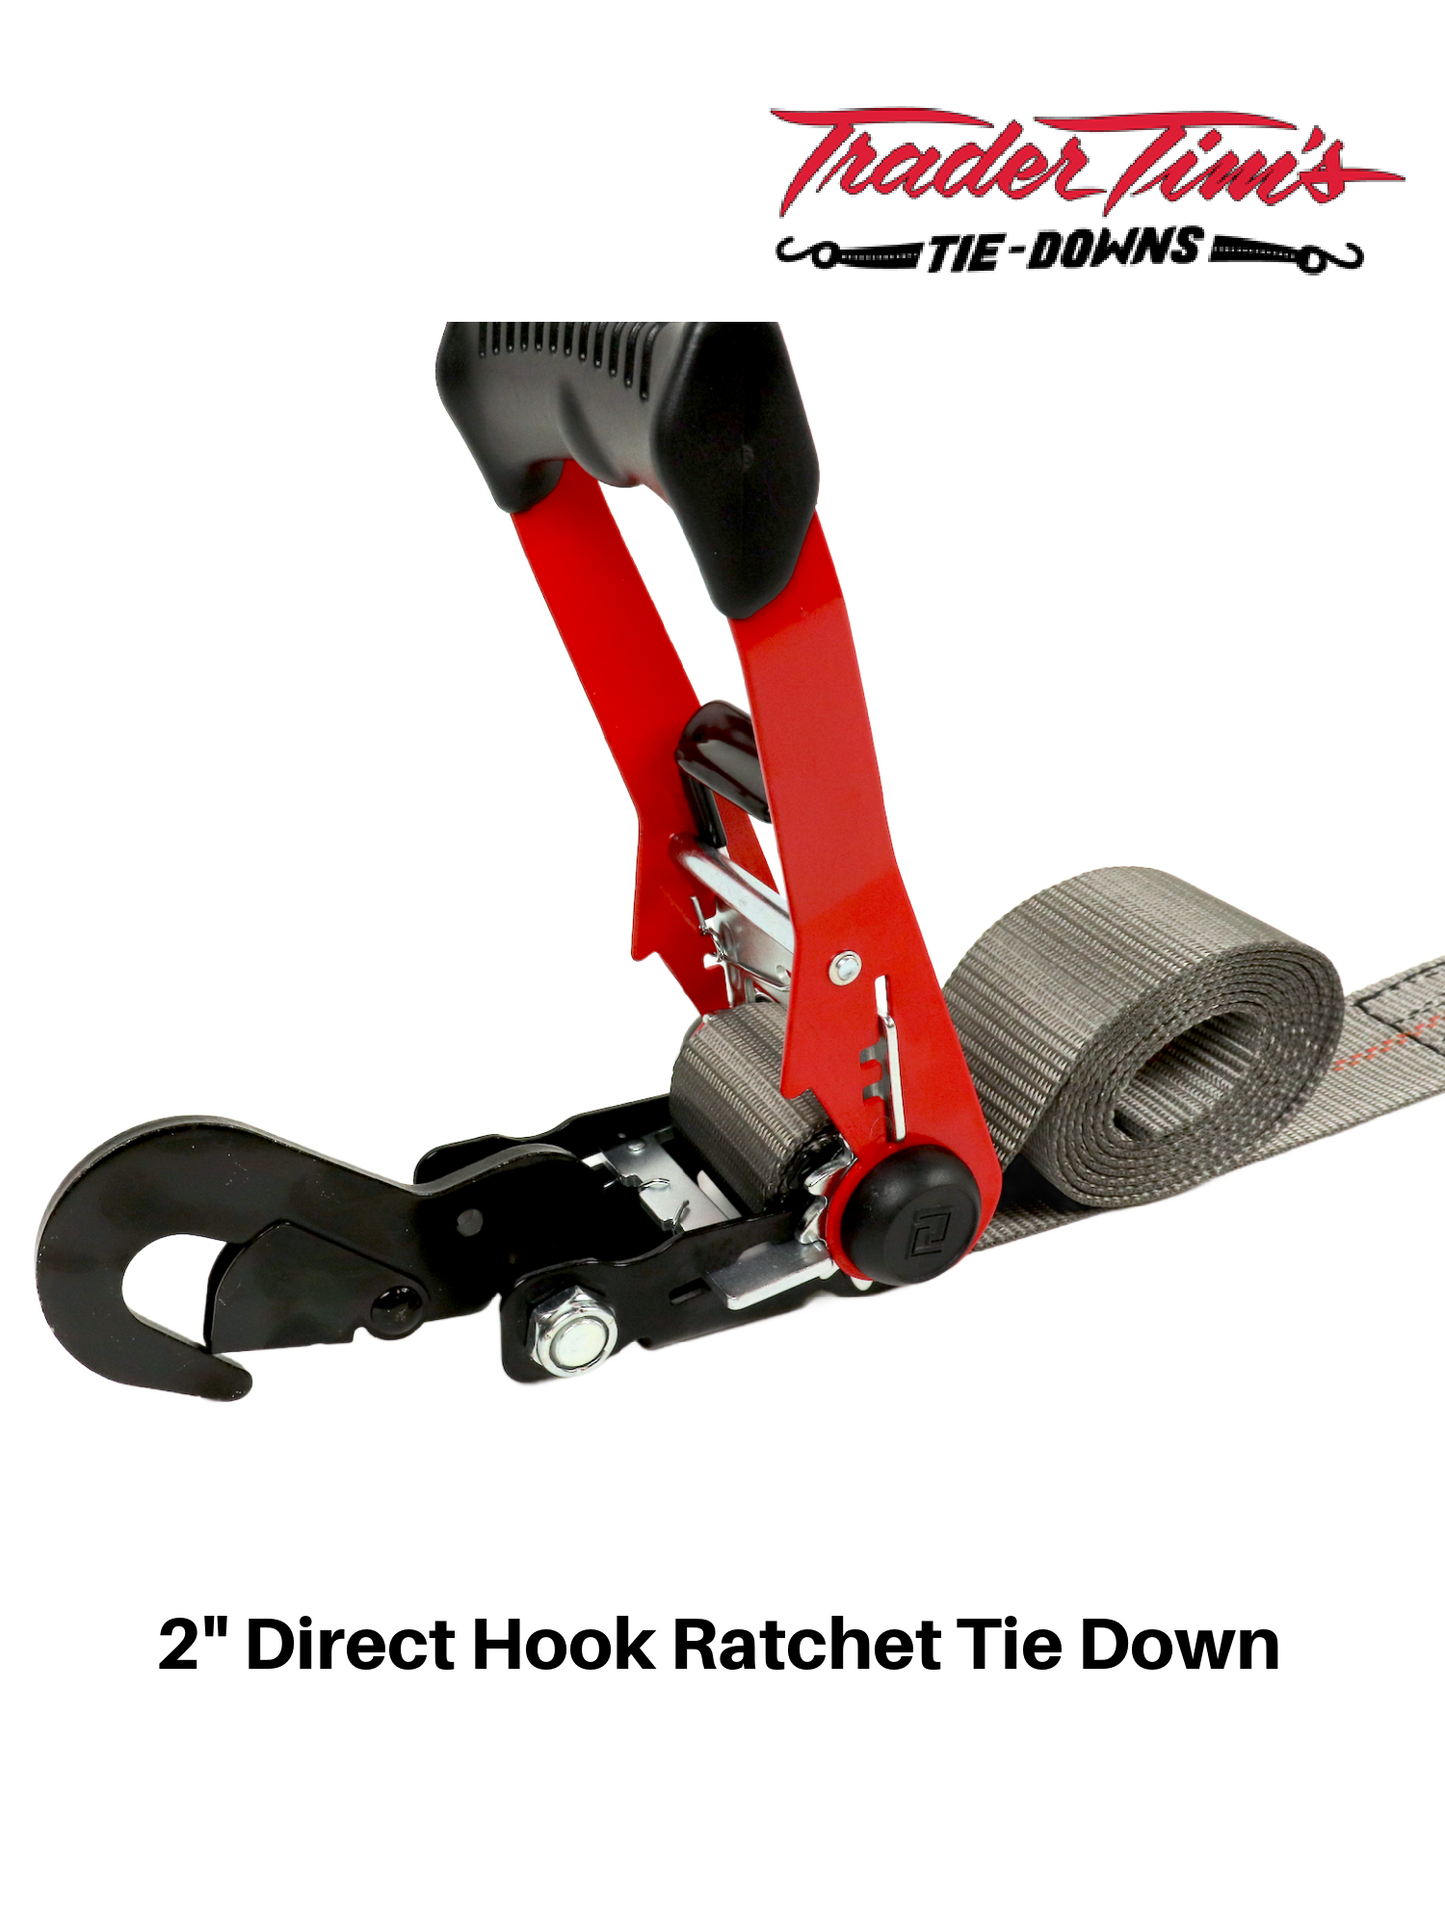 2"x 8' Direct Hook Ratchet Tie Down